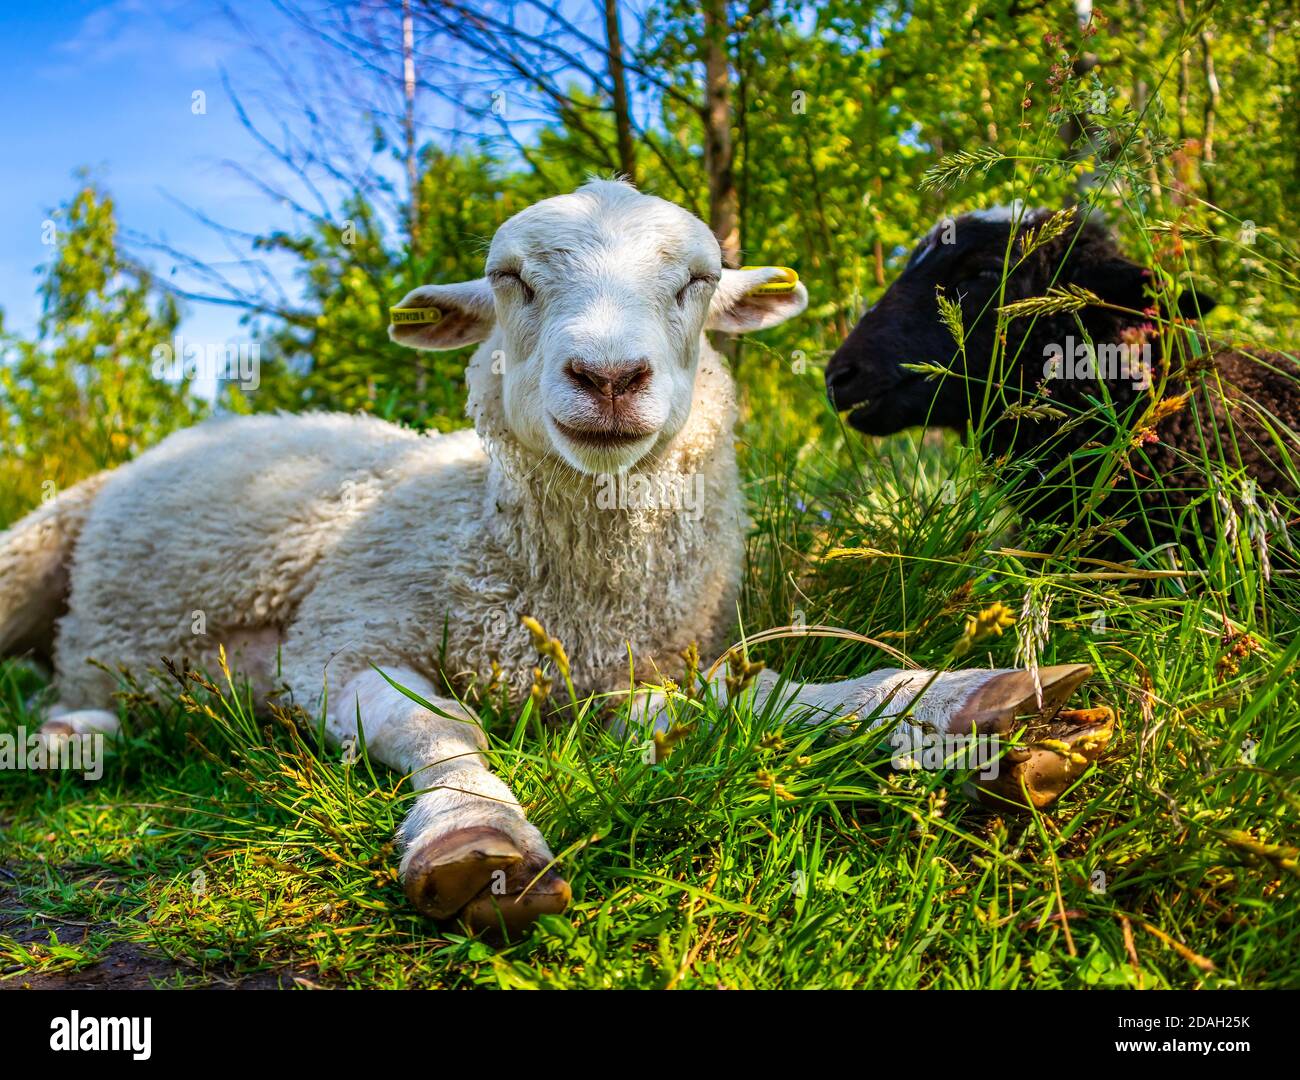 Deux brebis mignonnes dans l'herbe verte dans le champ. Bétail. Jeunes agneaux blancs mignons dans un pré, ensoleillé jour d'été. Concept de l'agriculture rurale du pays. Vue basse. Banque D'Images